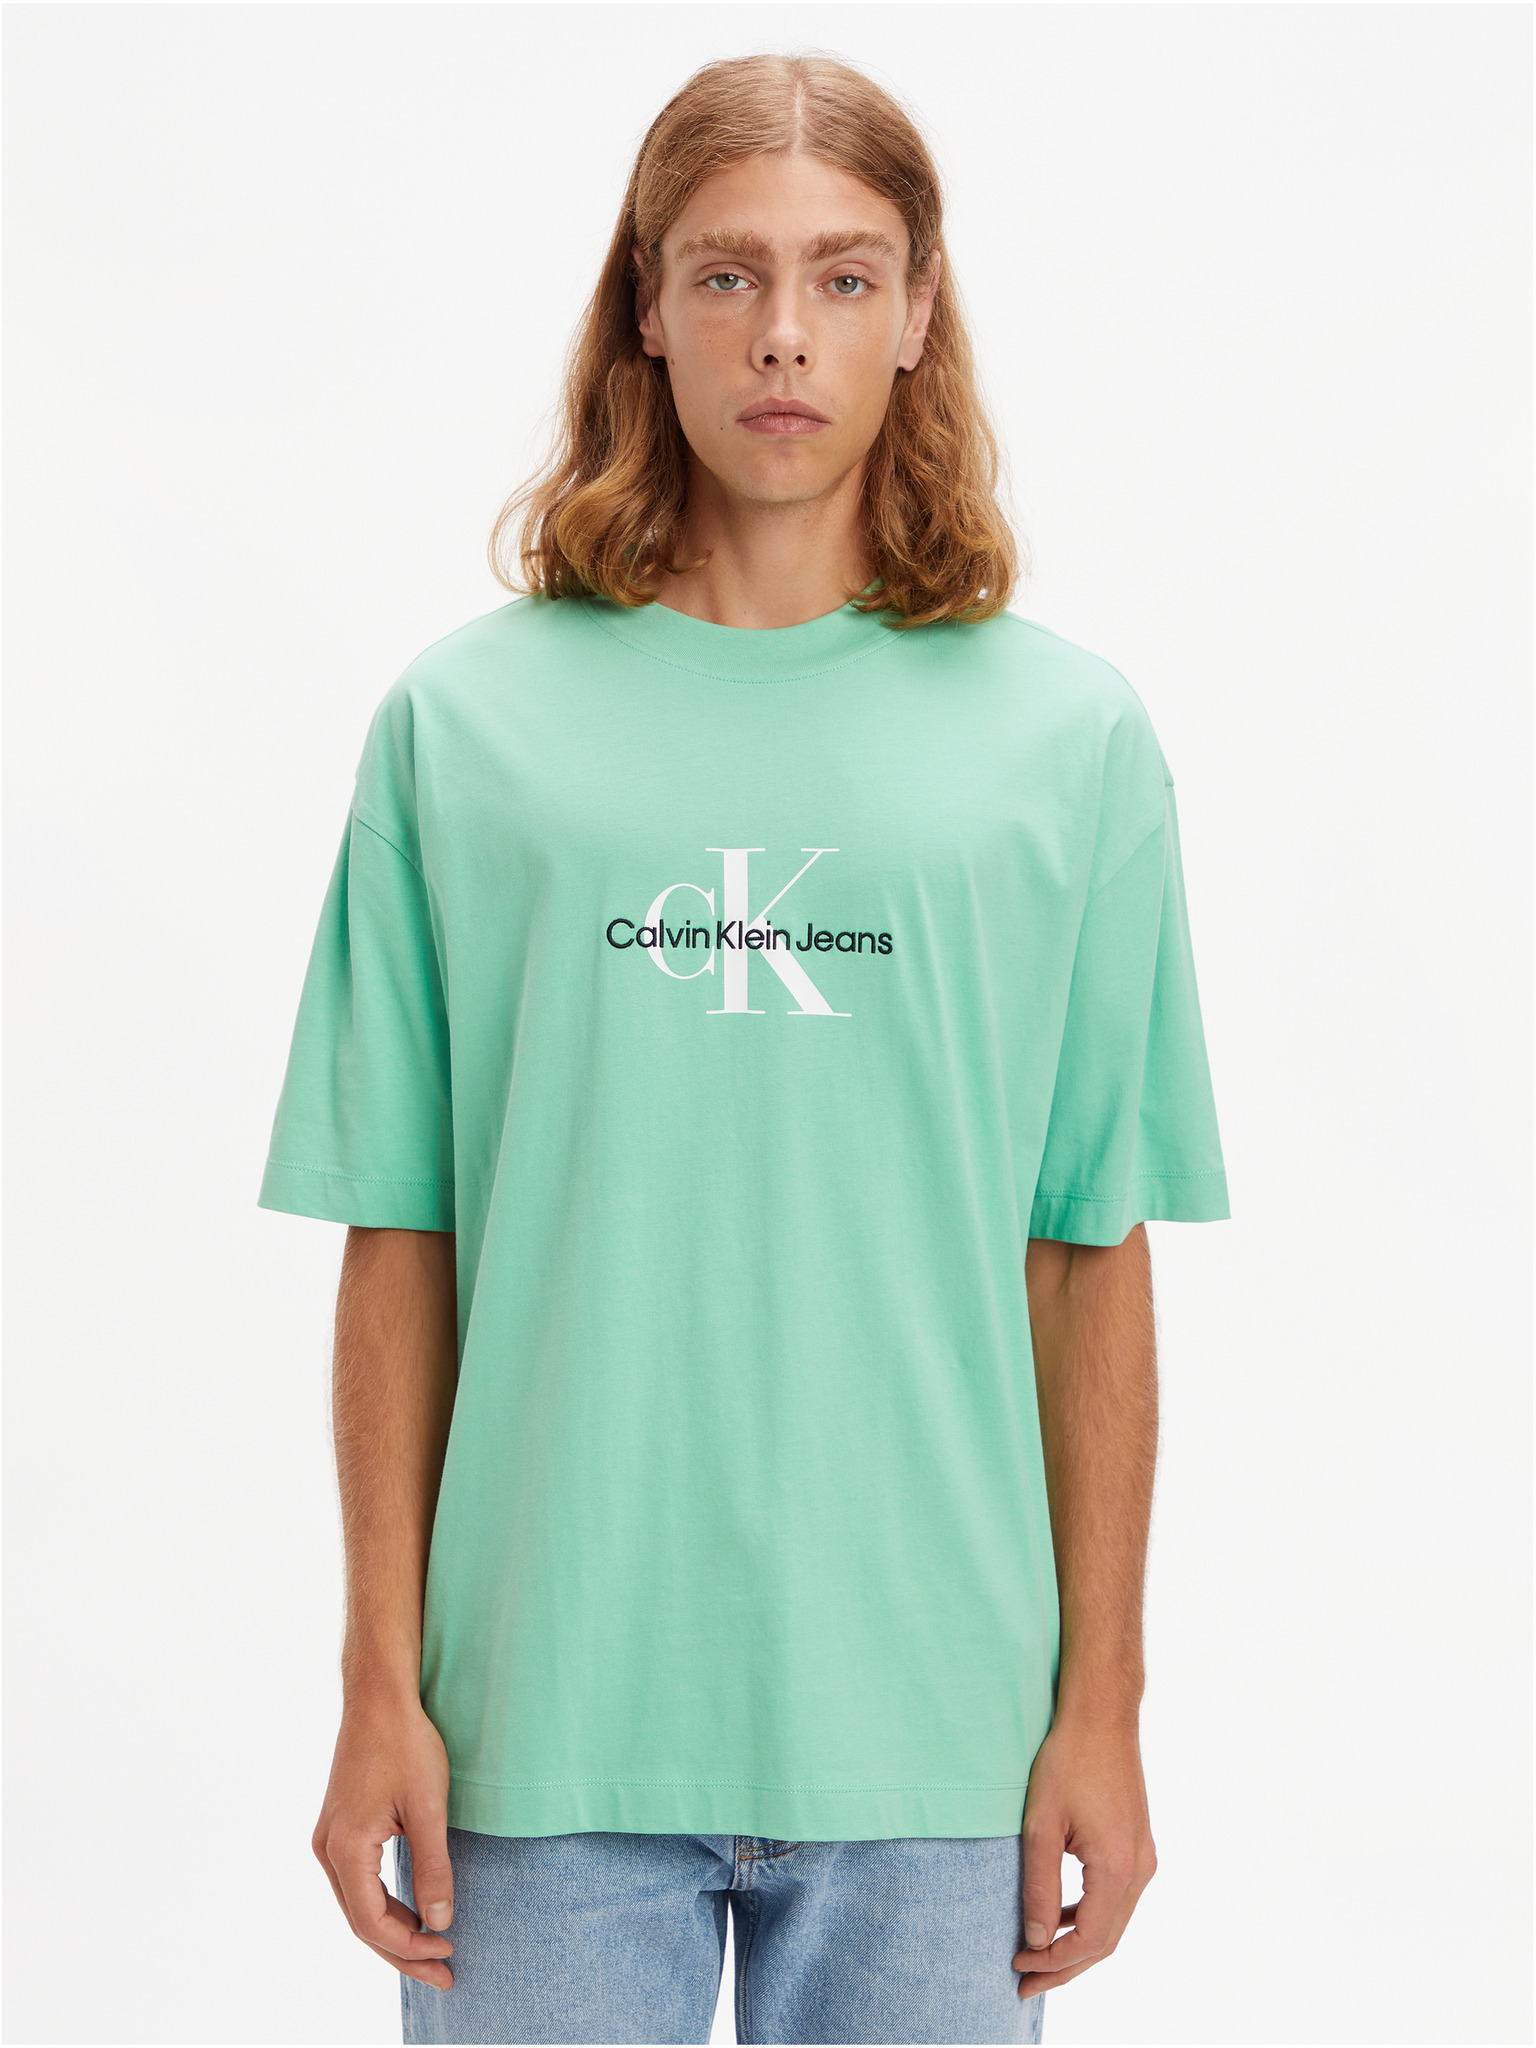 Klein - Calvin Jeans T-shirt